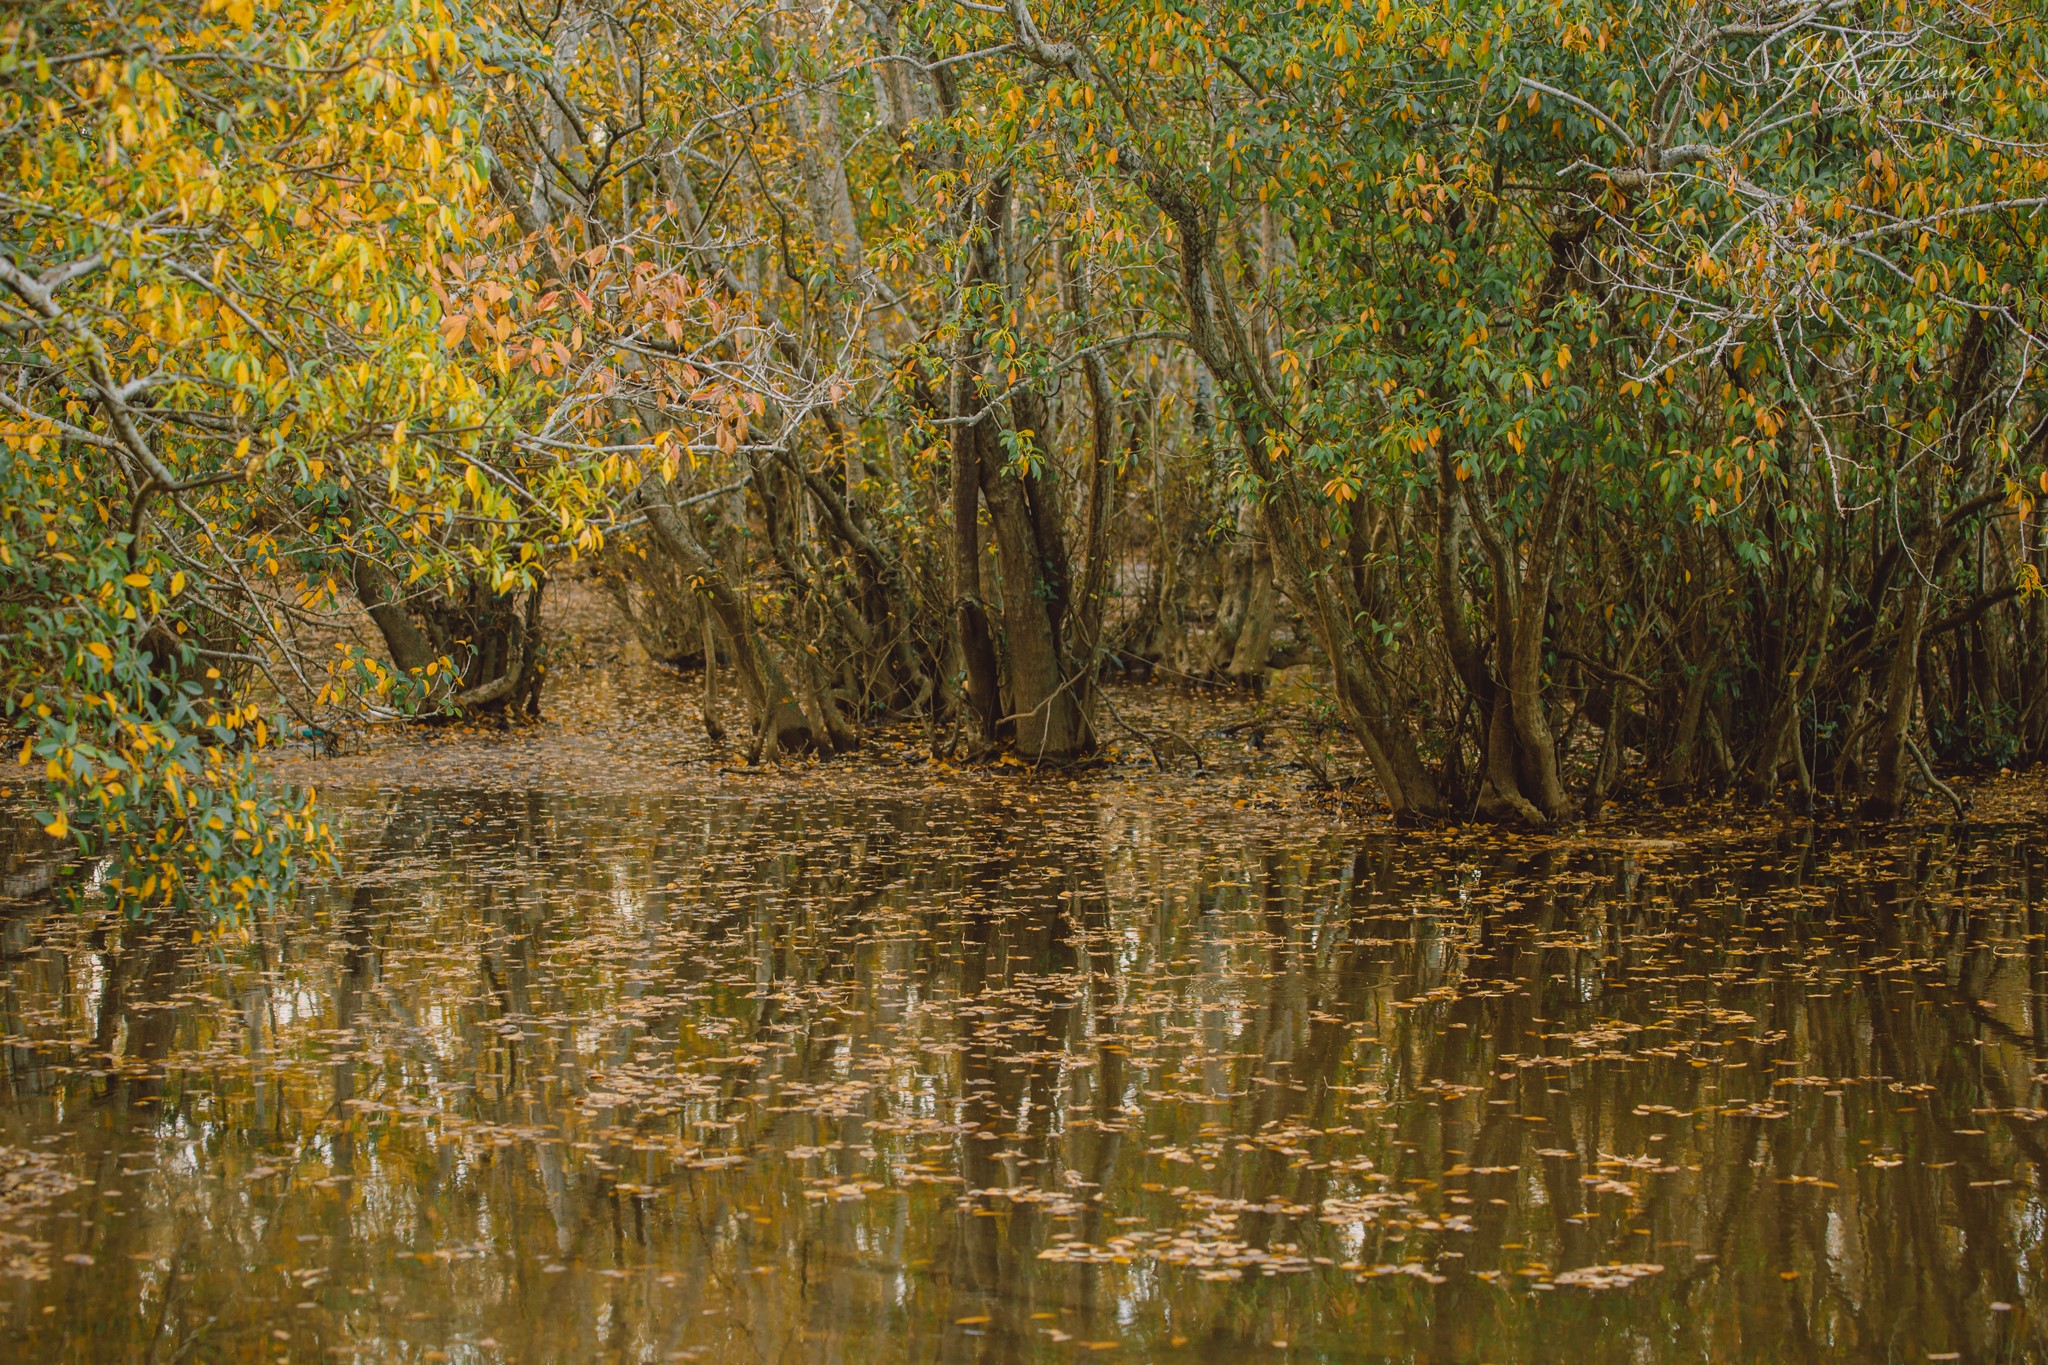 Rú Chá Mangrove Forest Hue